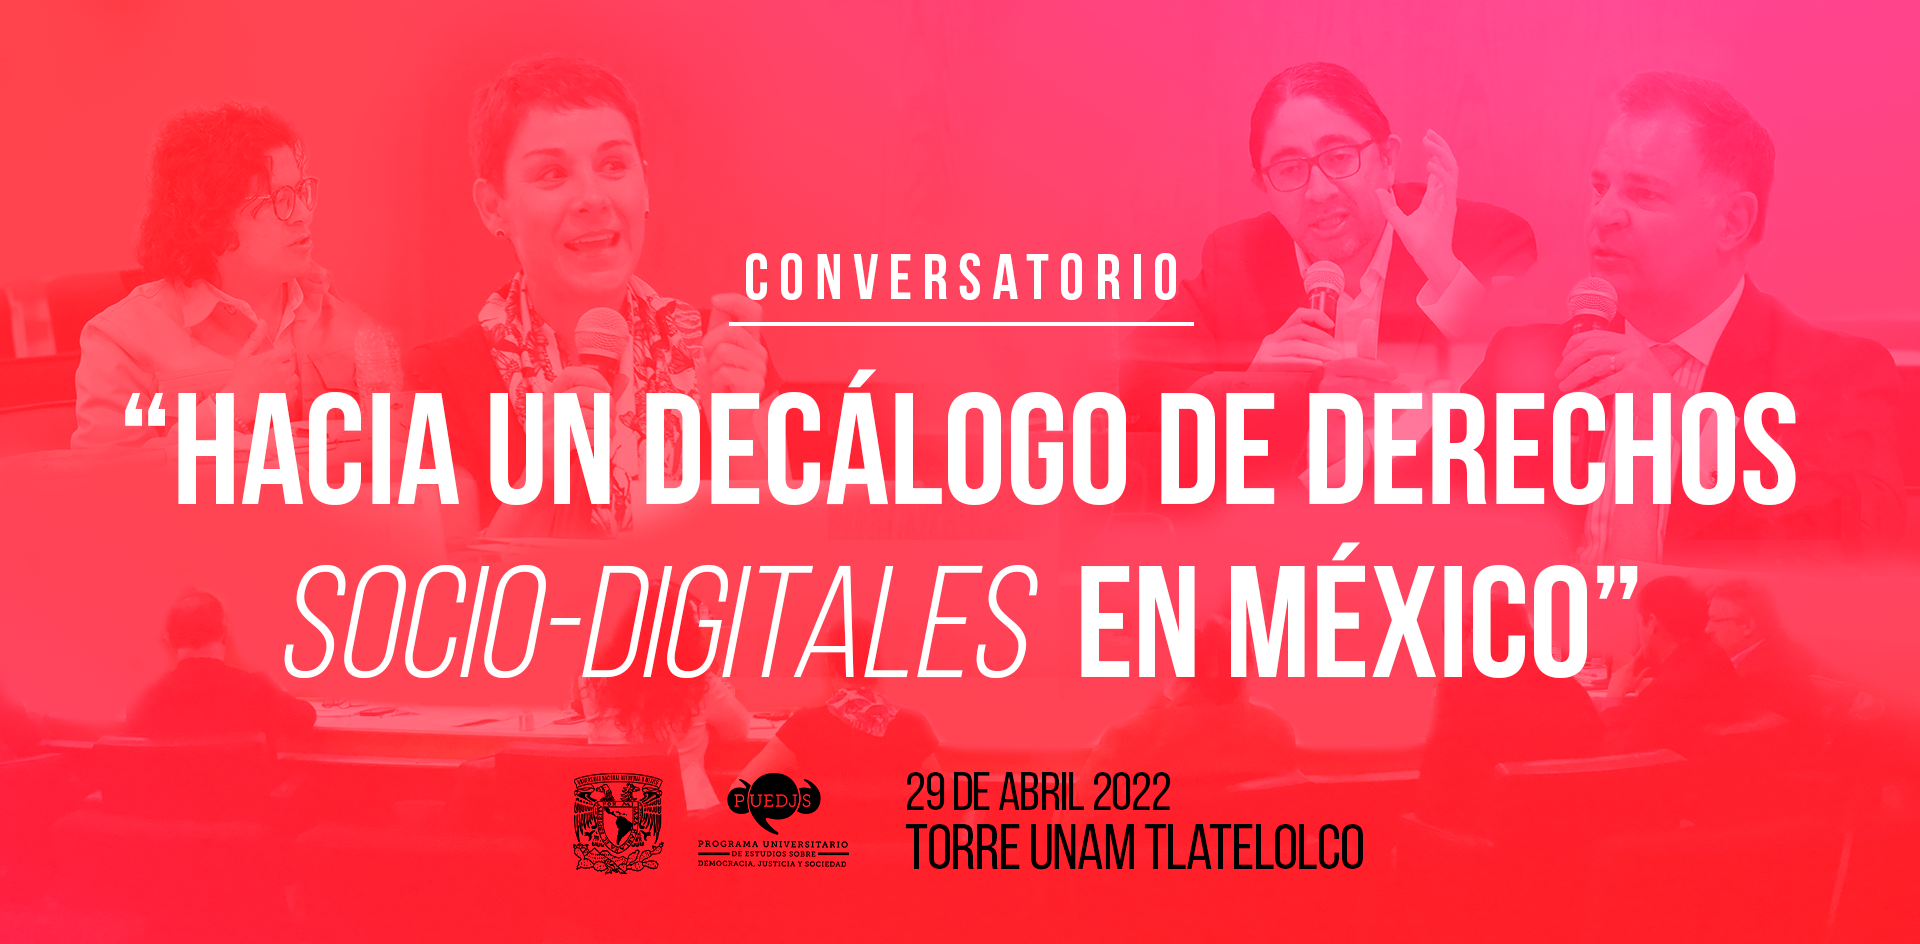 Conversatorio “Hacia un decálogo de derechos socio-digitales en México”